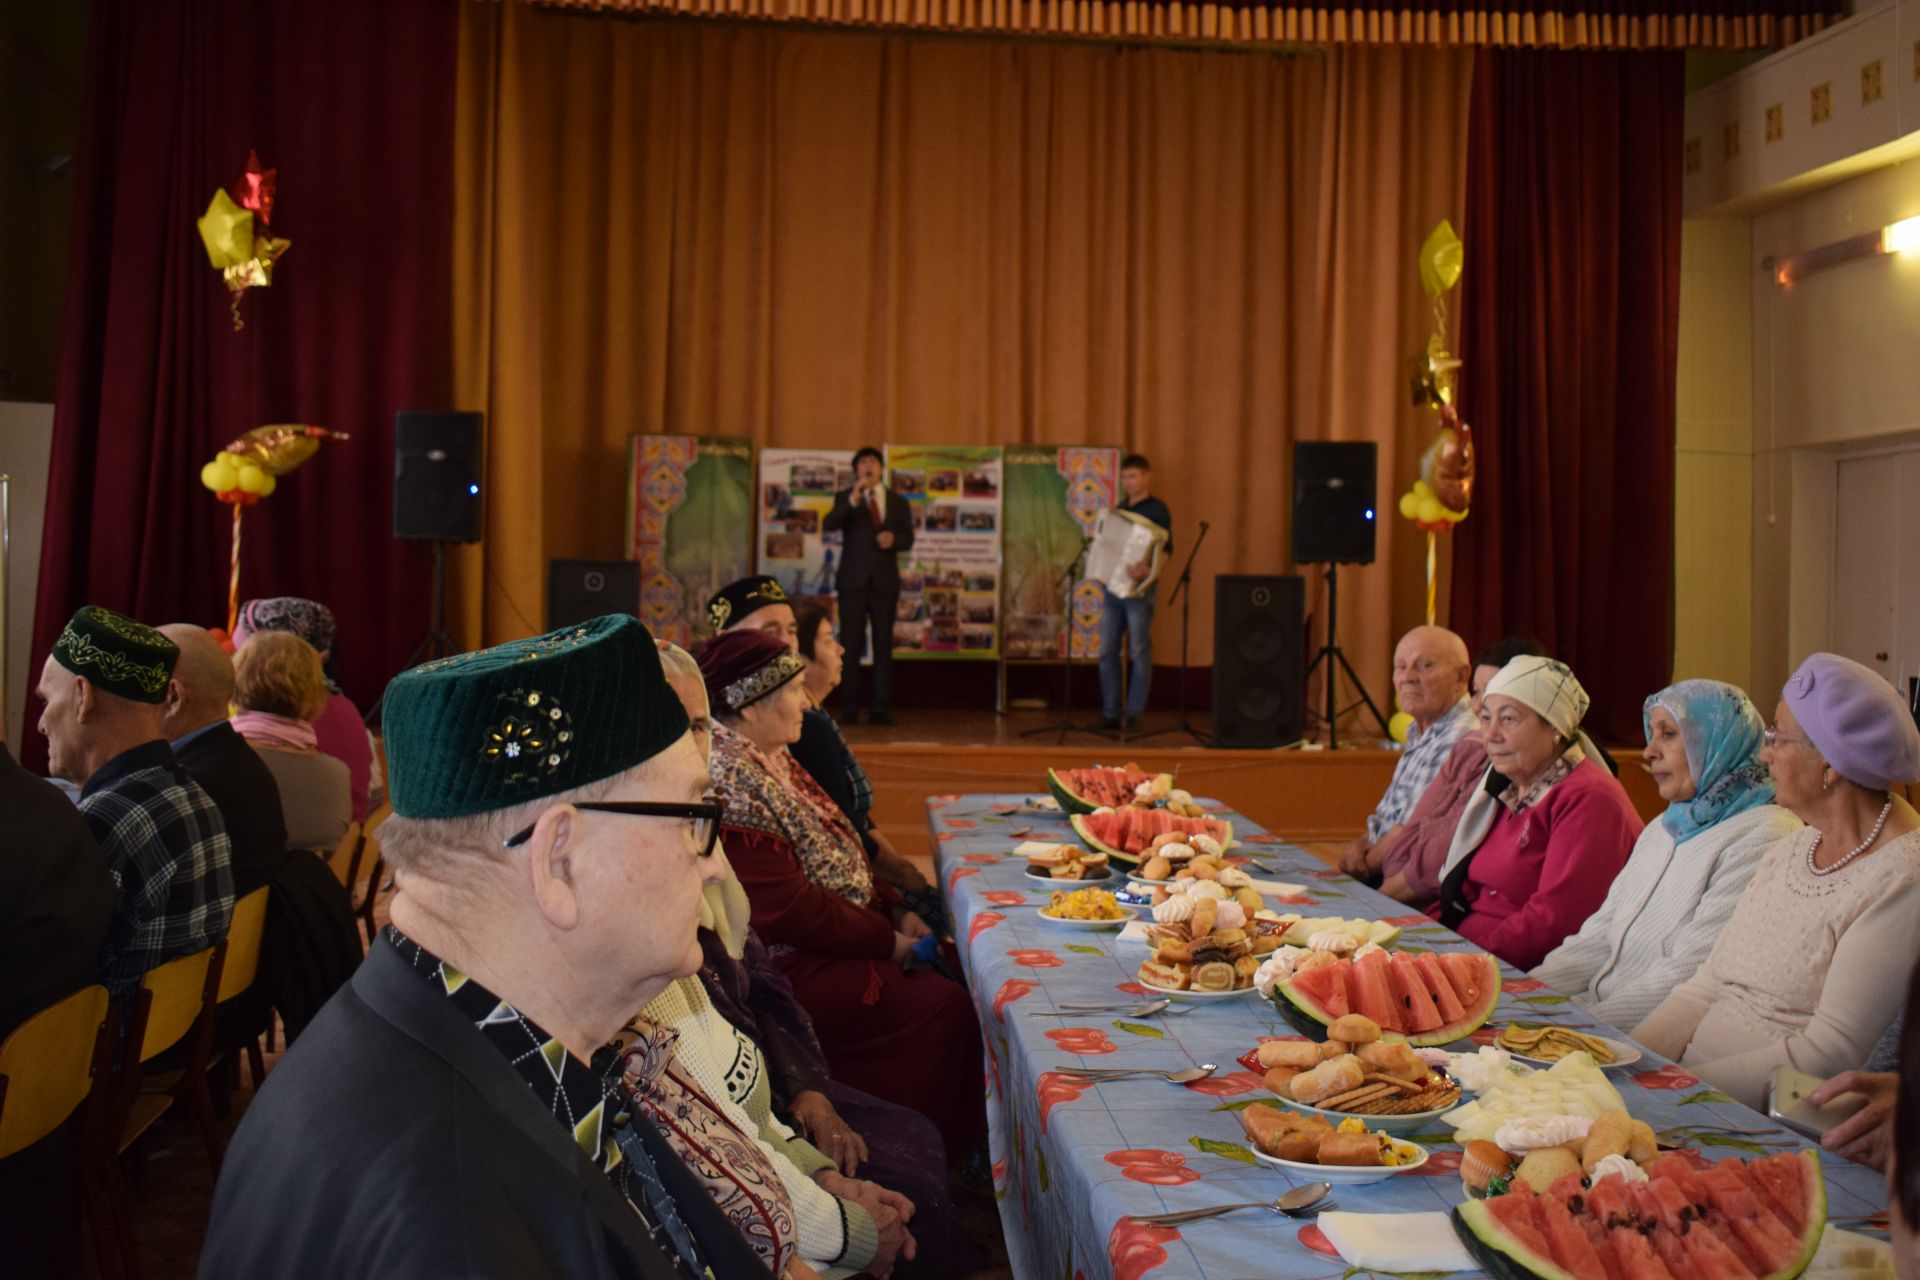 Территориальное общественное самоуправление №13 Азнакаево пригласило на праздник представителей старшего поколения